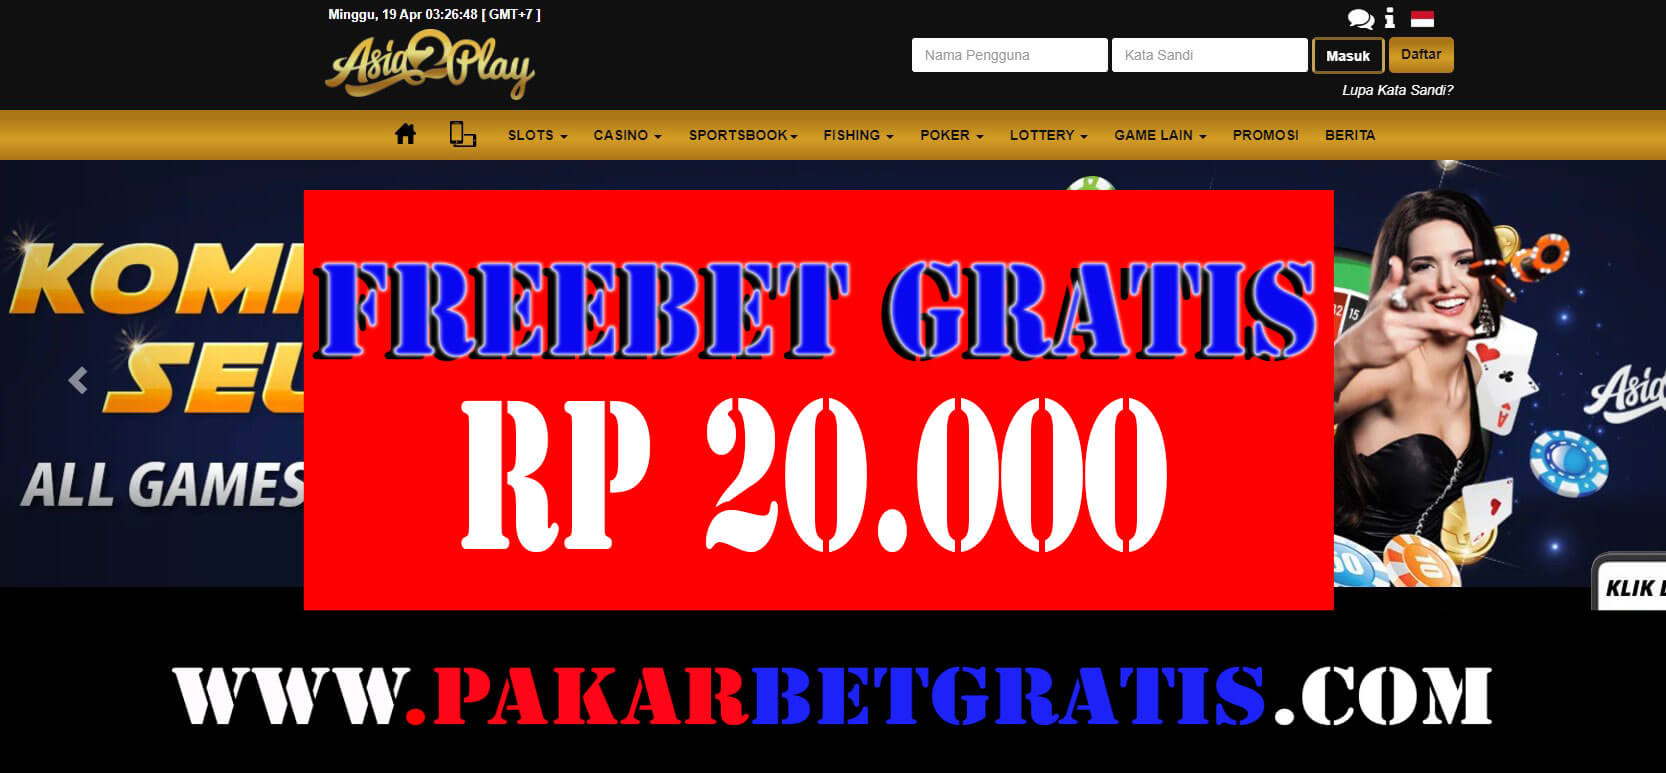 asia2play Freebet gratis Rp 20.000 tanpa deposit